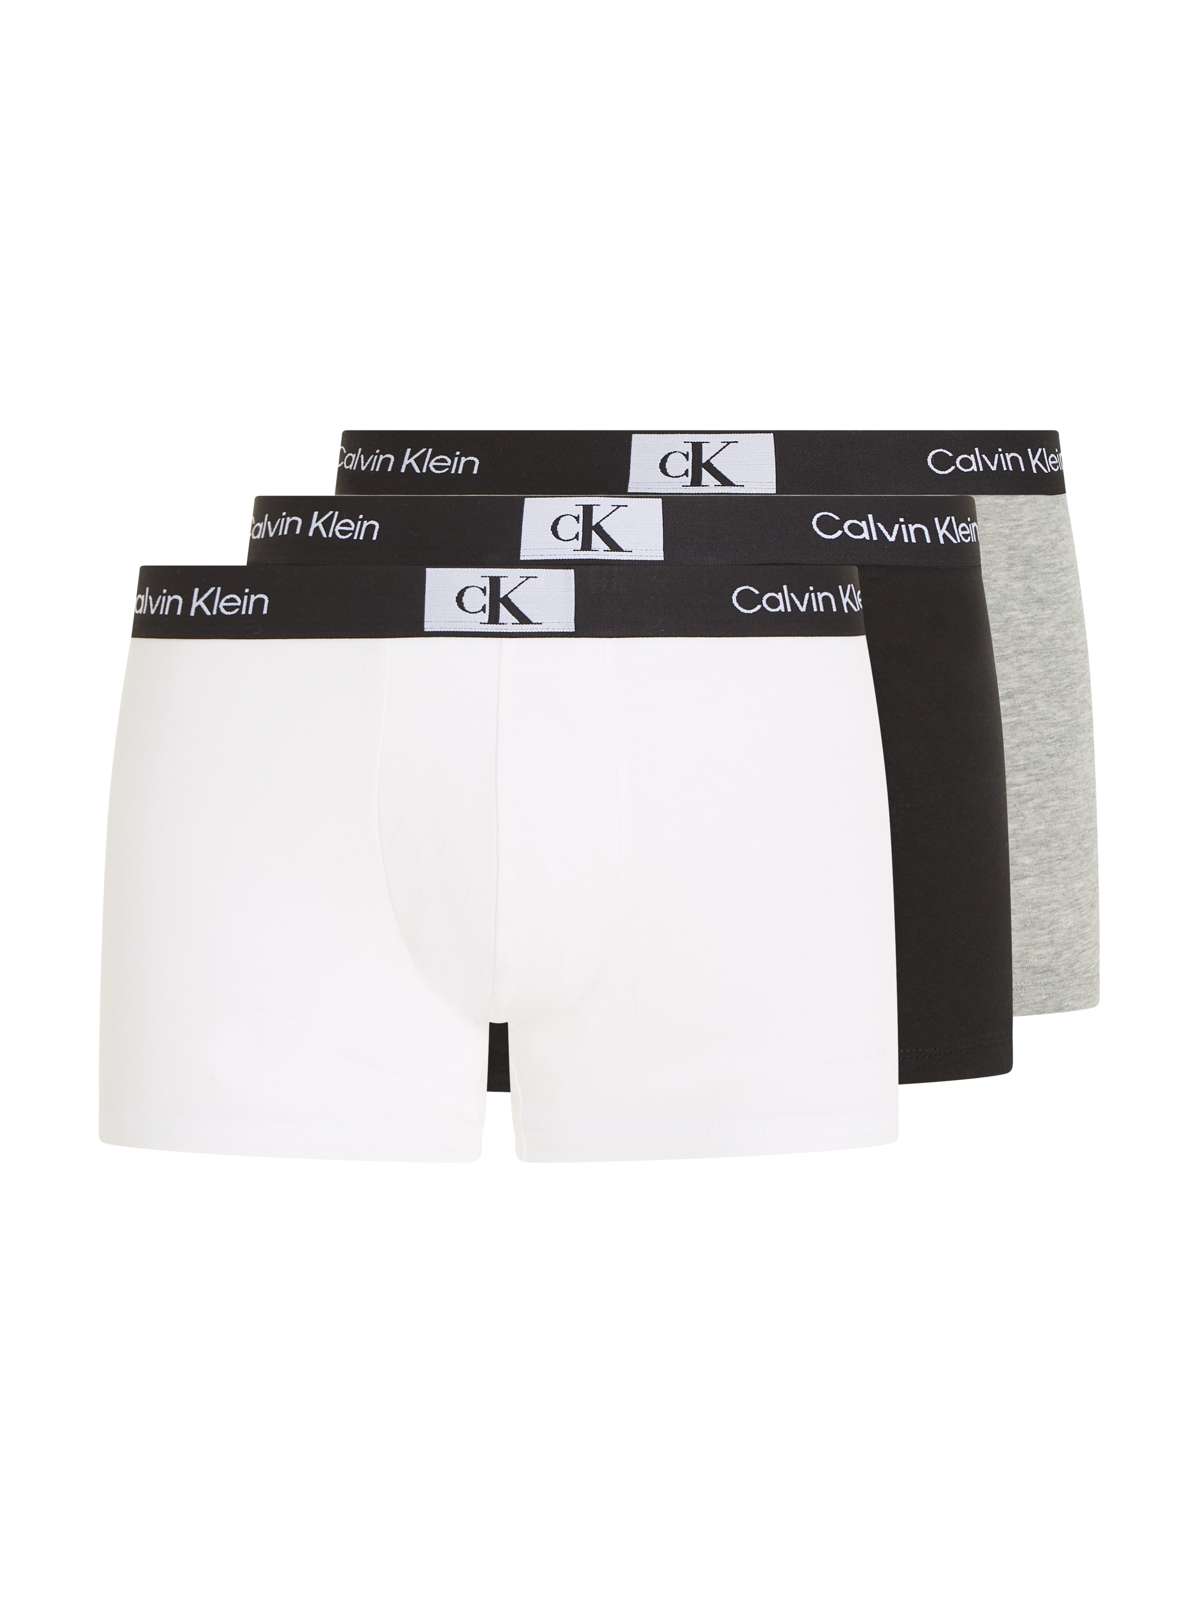 Трусы (3 шт. в упаковке) с эластичным поясом с логотипом Calvin Klein.